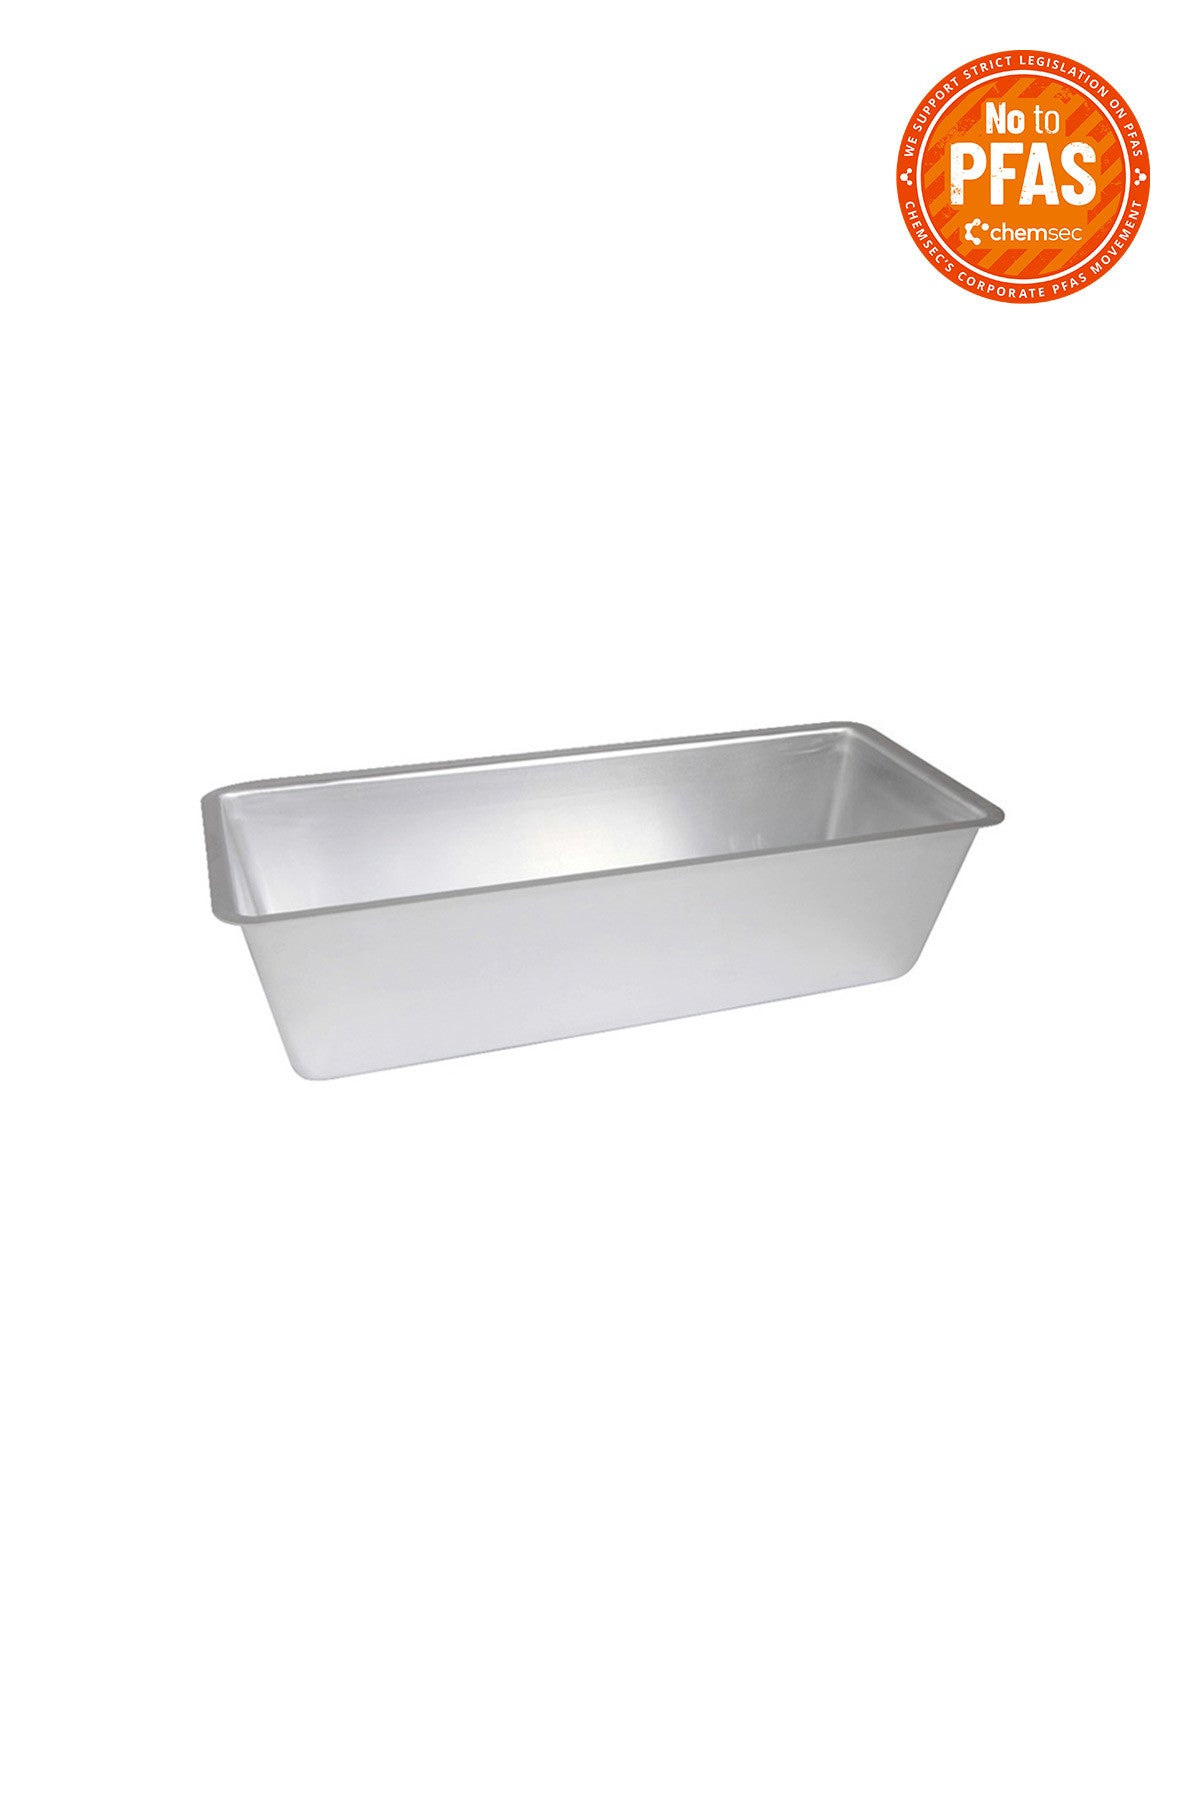 BREAD PAN aluminium 22 cm 1 L